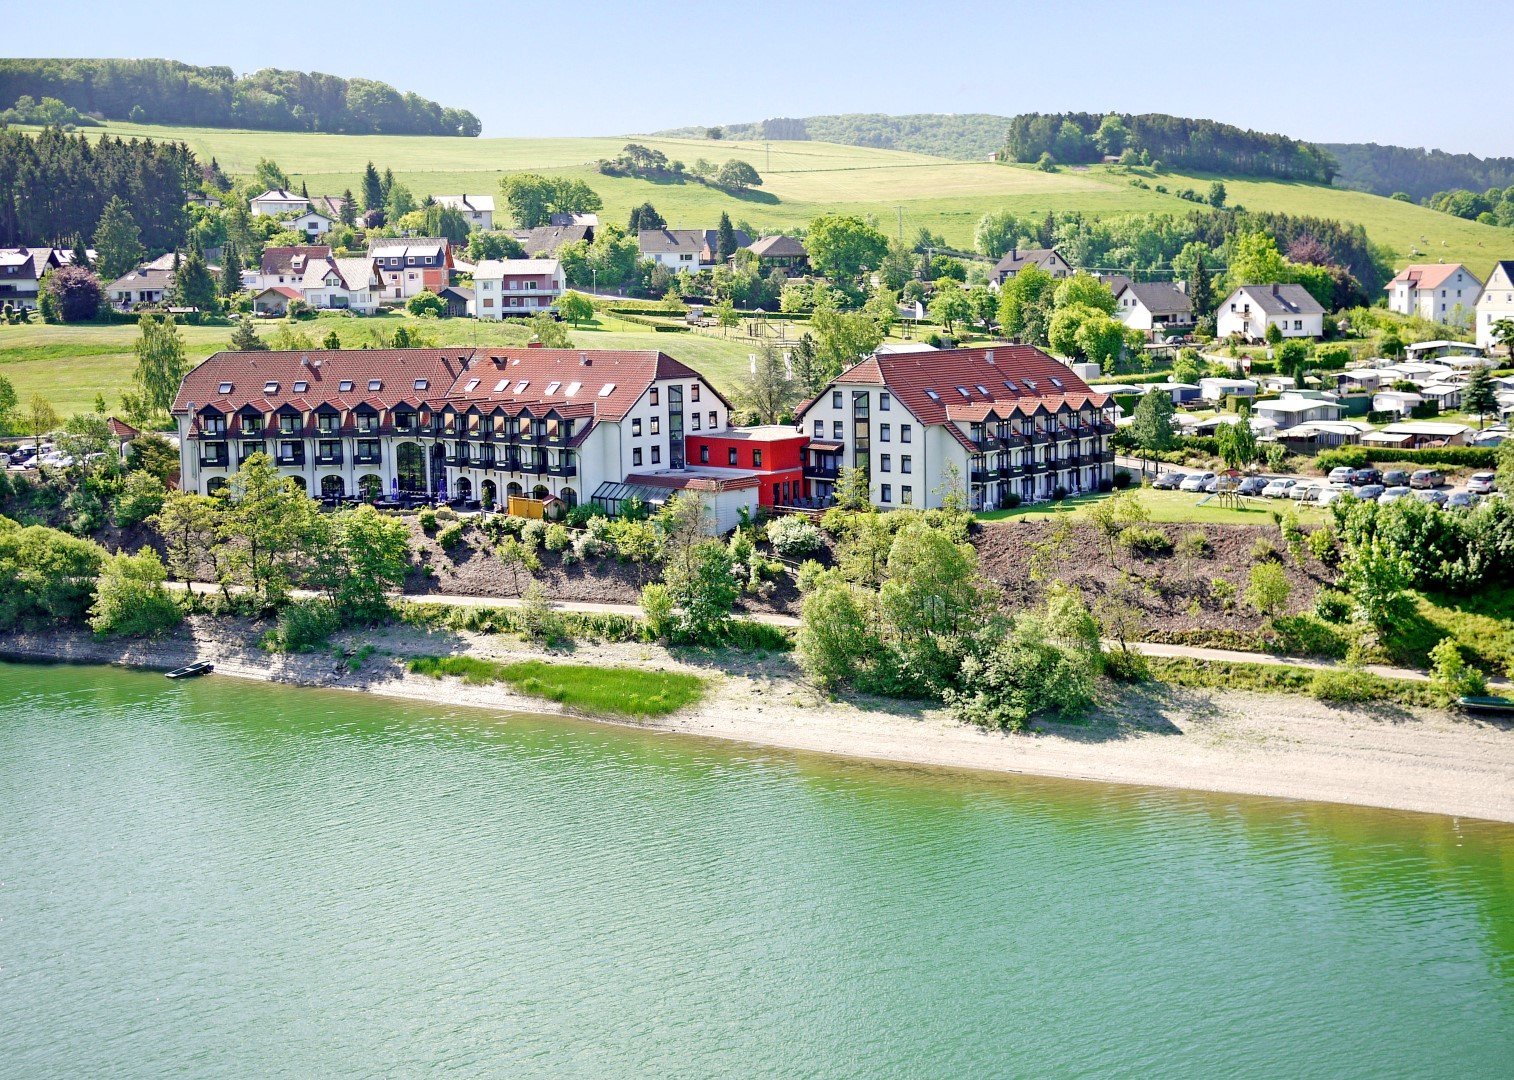 Radfahren am Diemelsee – 2 Nächte – Göbel·s Seehotel Diemelsee (4 Sterne) in Diemelsee-Heringhausen, Hessen inkl. Halbpension